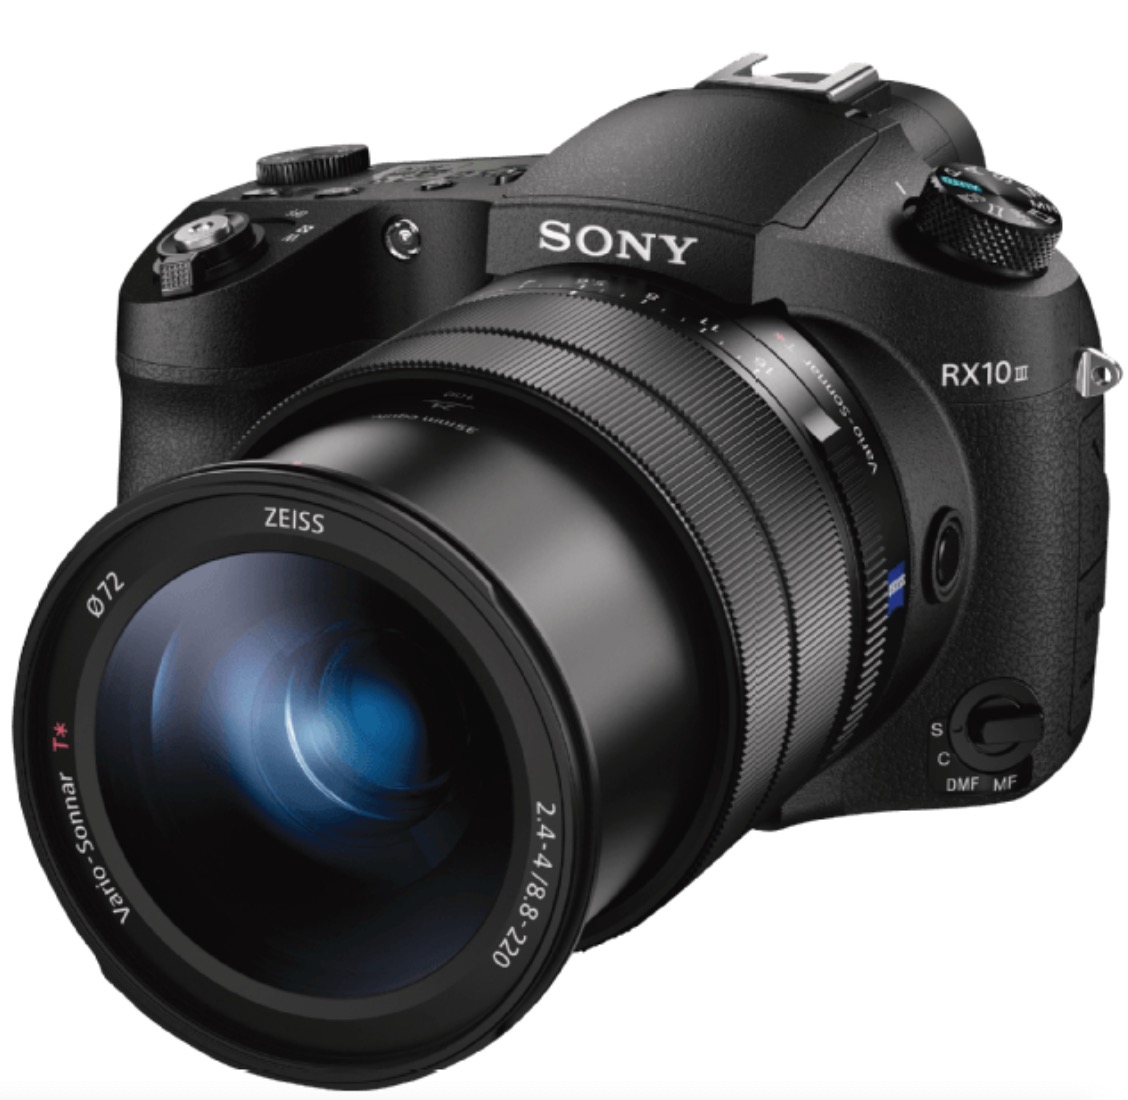 SONY Cyber-shot DSC-RX10 M3 Zeiss Bridgekamera mit 25x opt. Zoom für nur 966,- Euro inkl. Versand